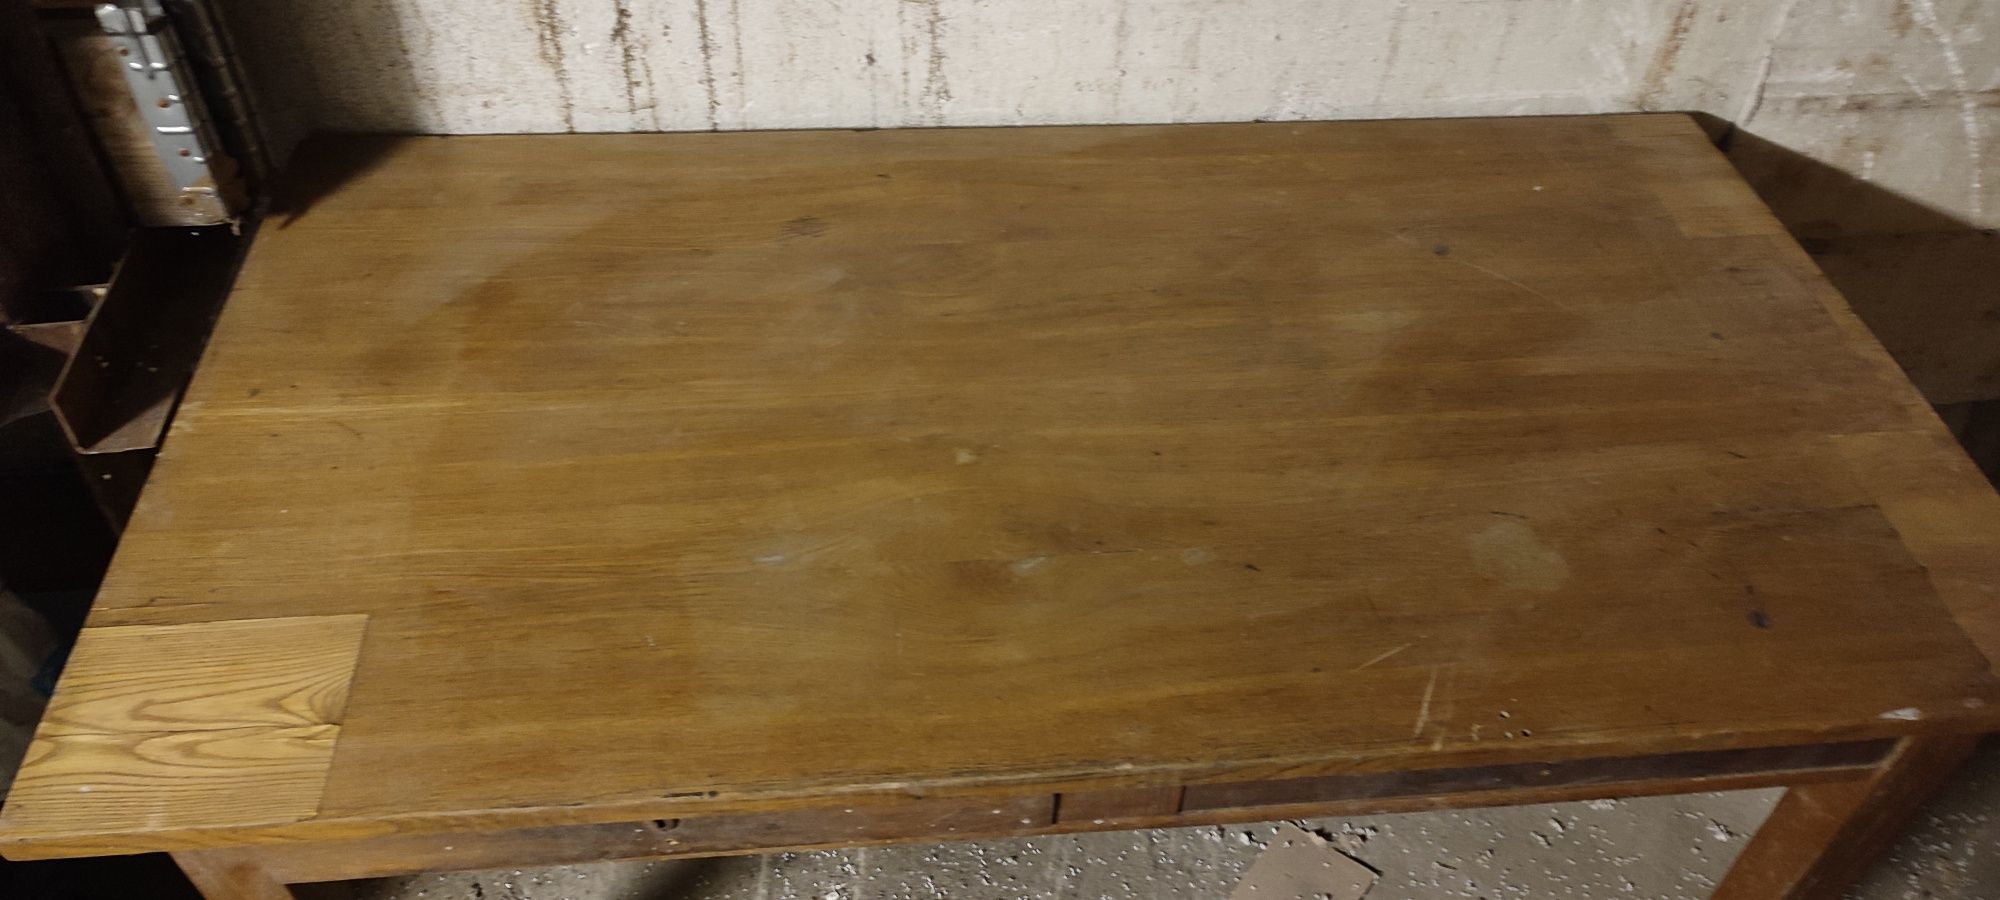 Duży drewniany stół